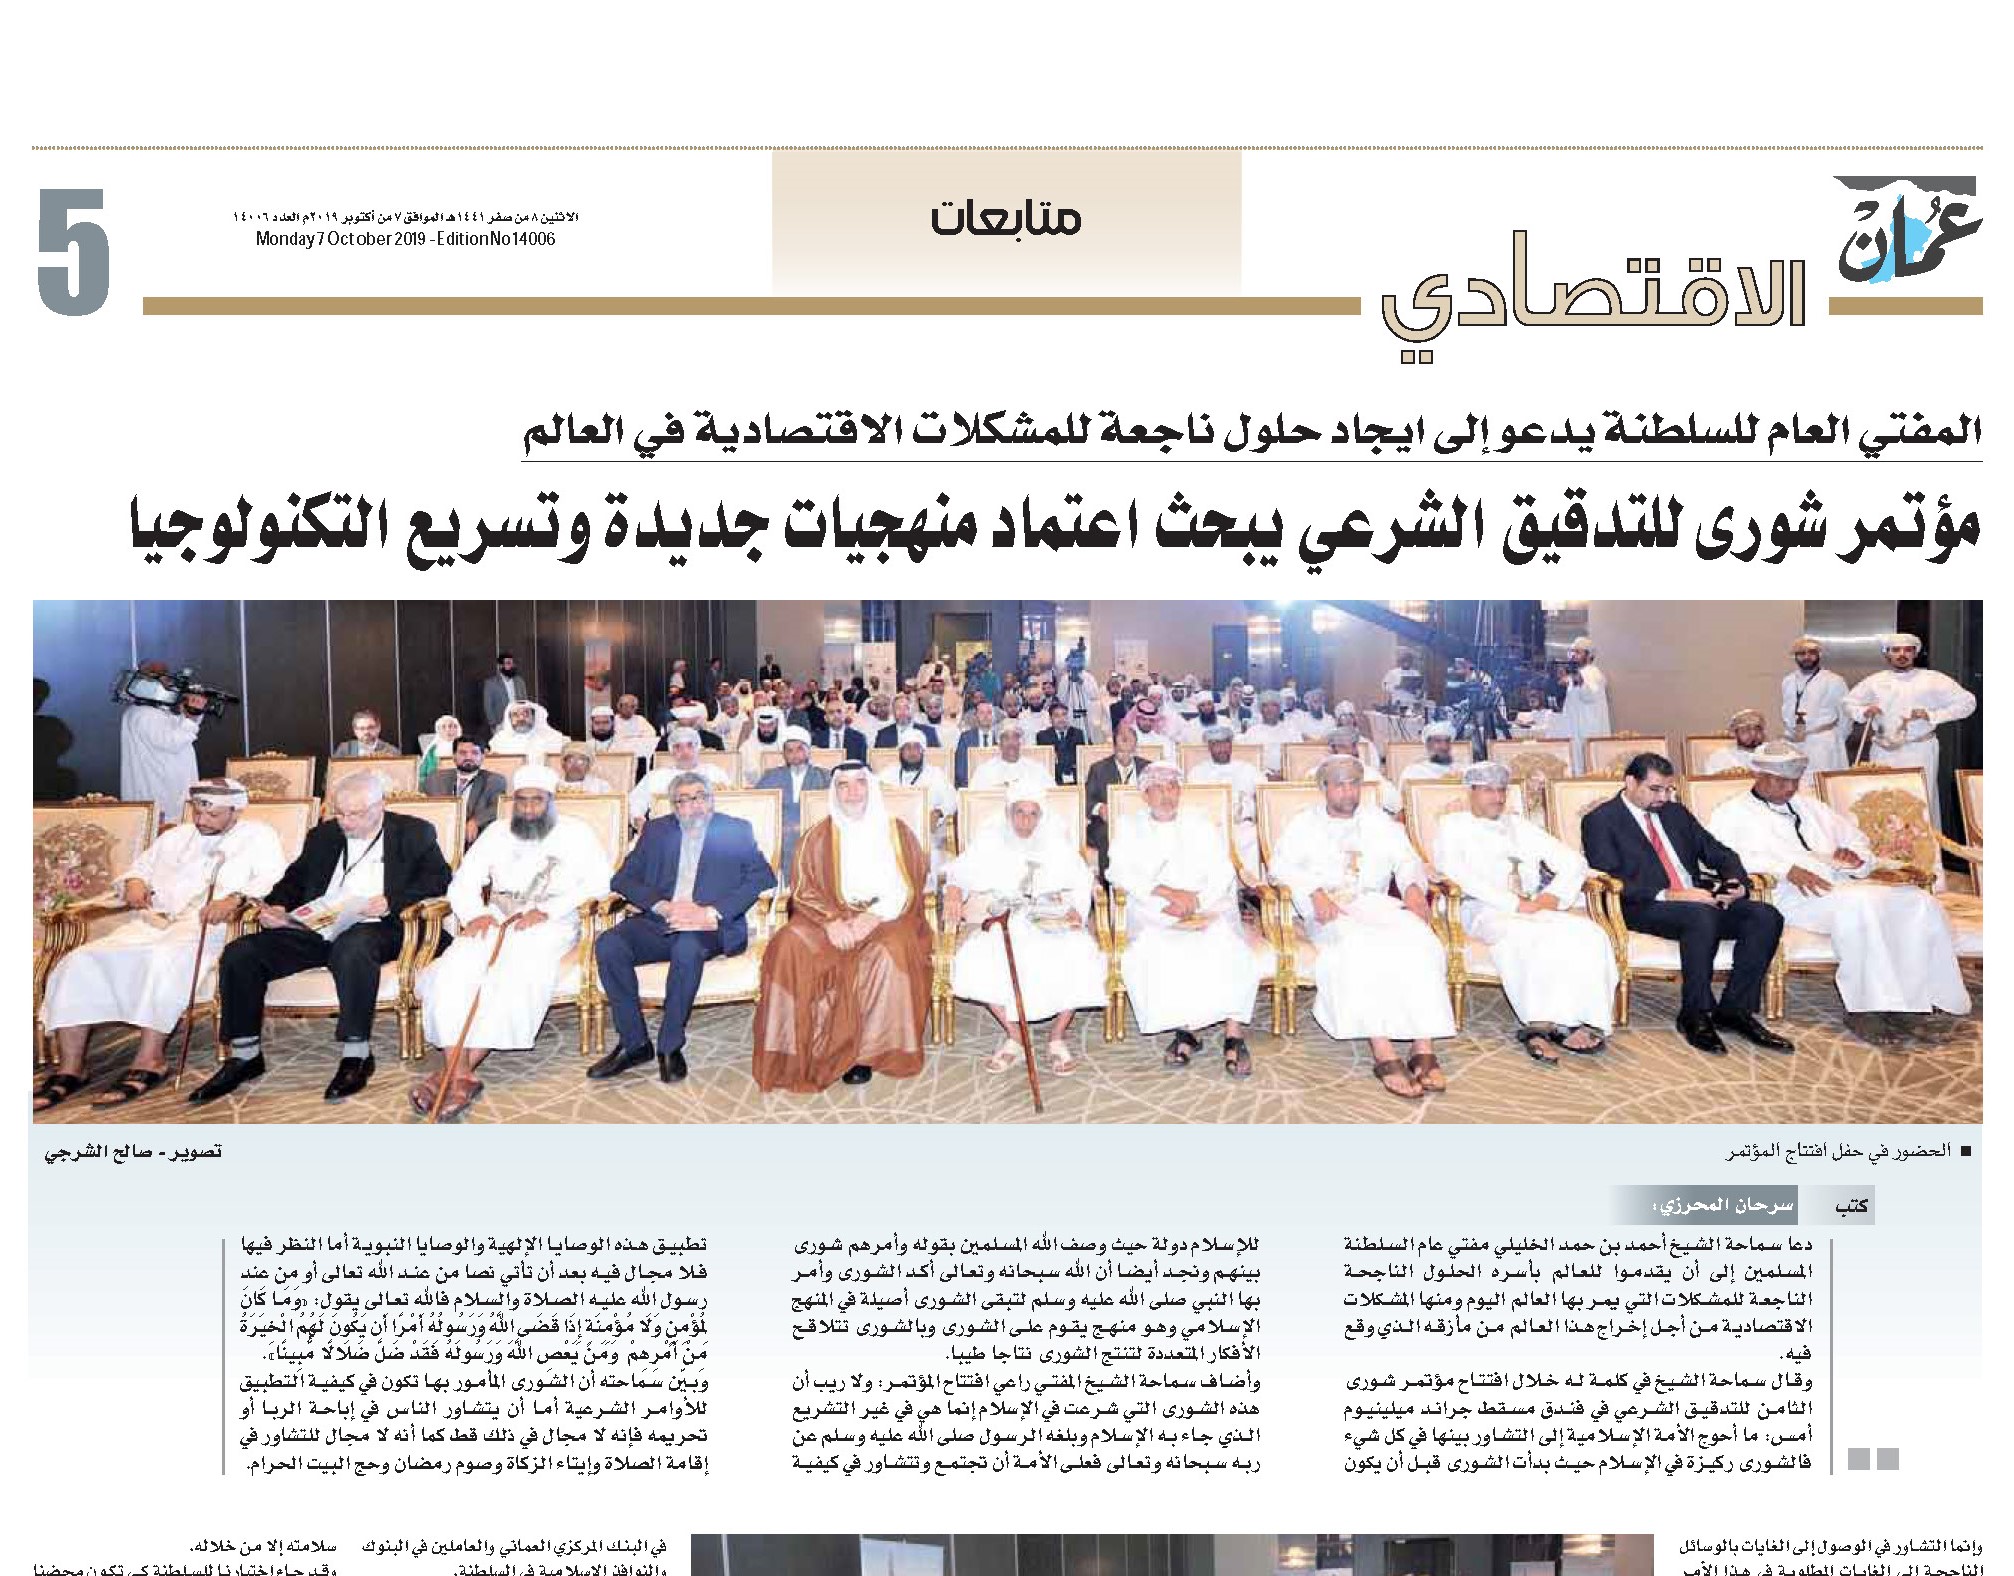 مؤتمر شورى الثامن للتدقيق الشرعي في صحيفة عمان